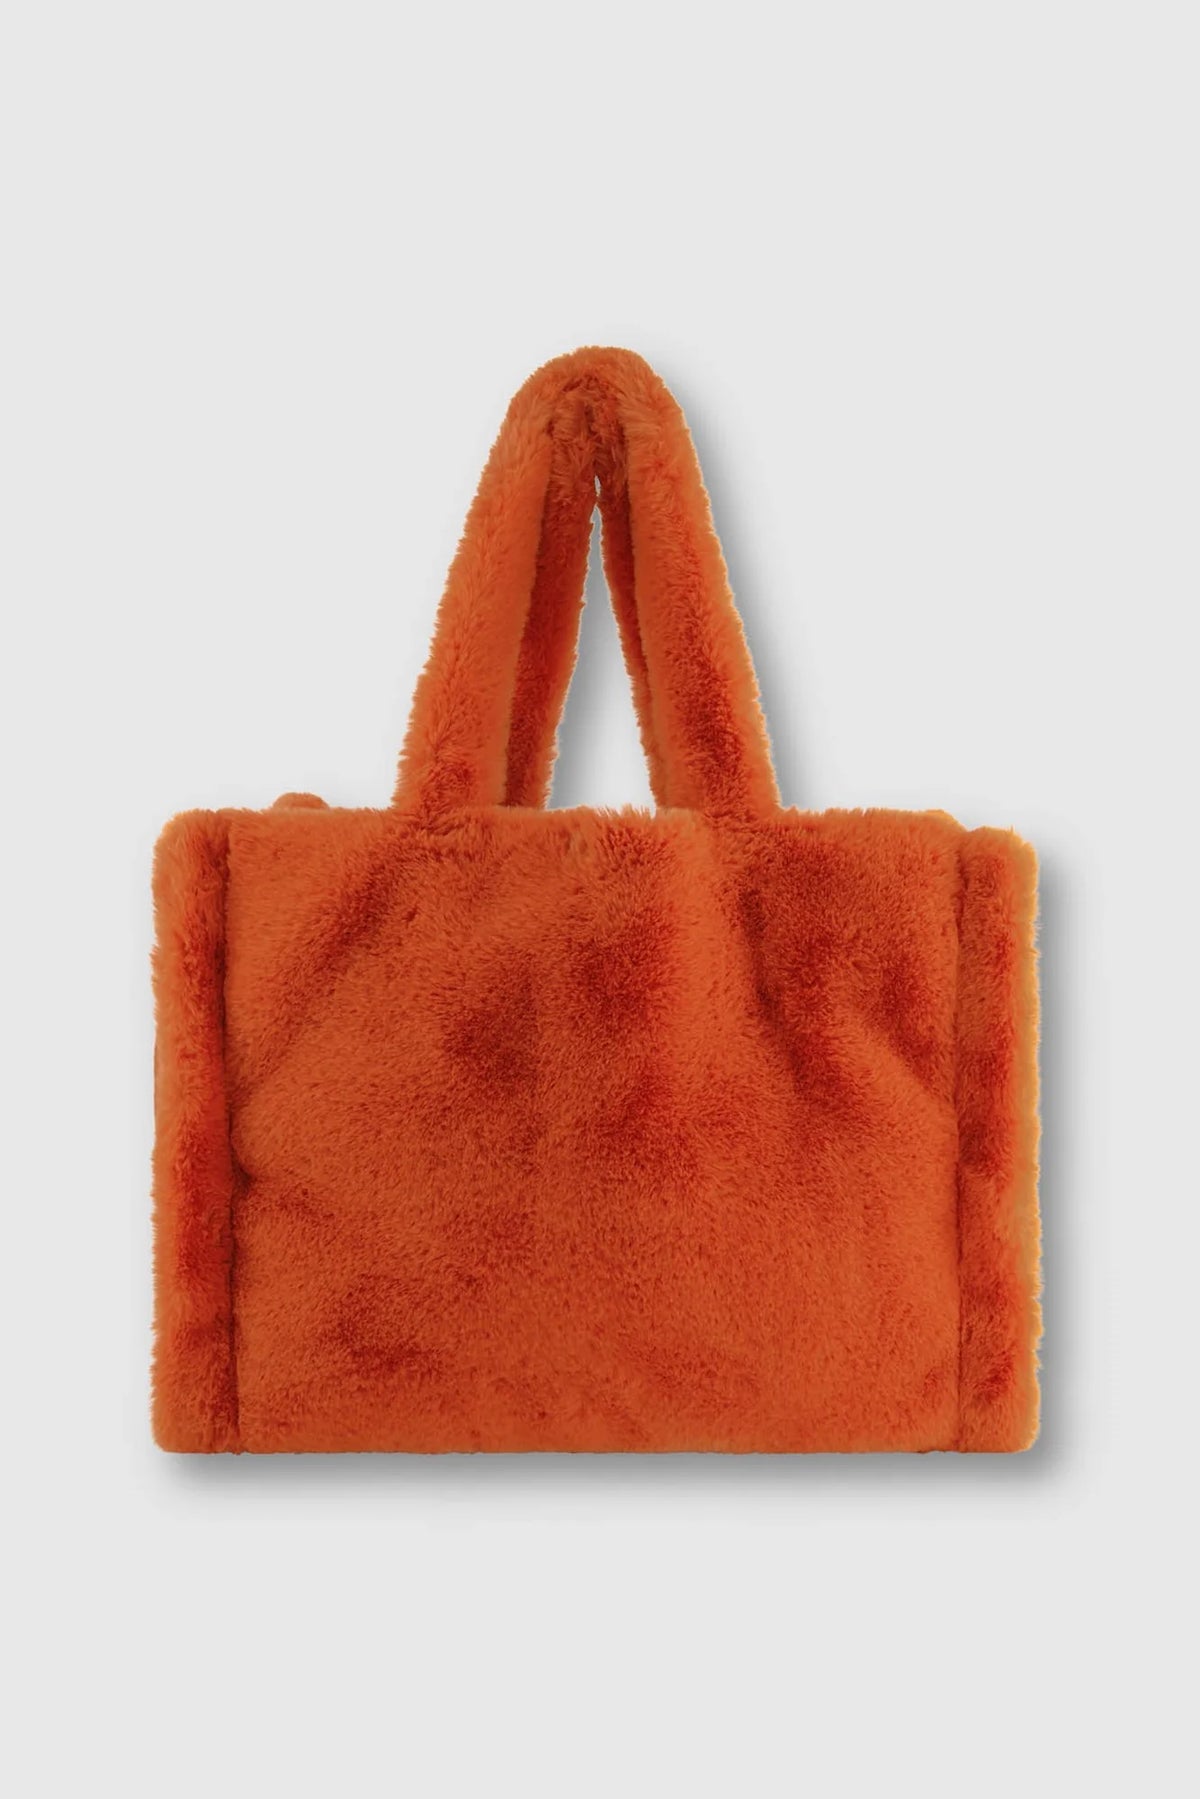 Faux fur terracotta orange shopper with shoulder handles